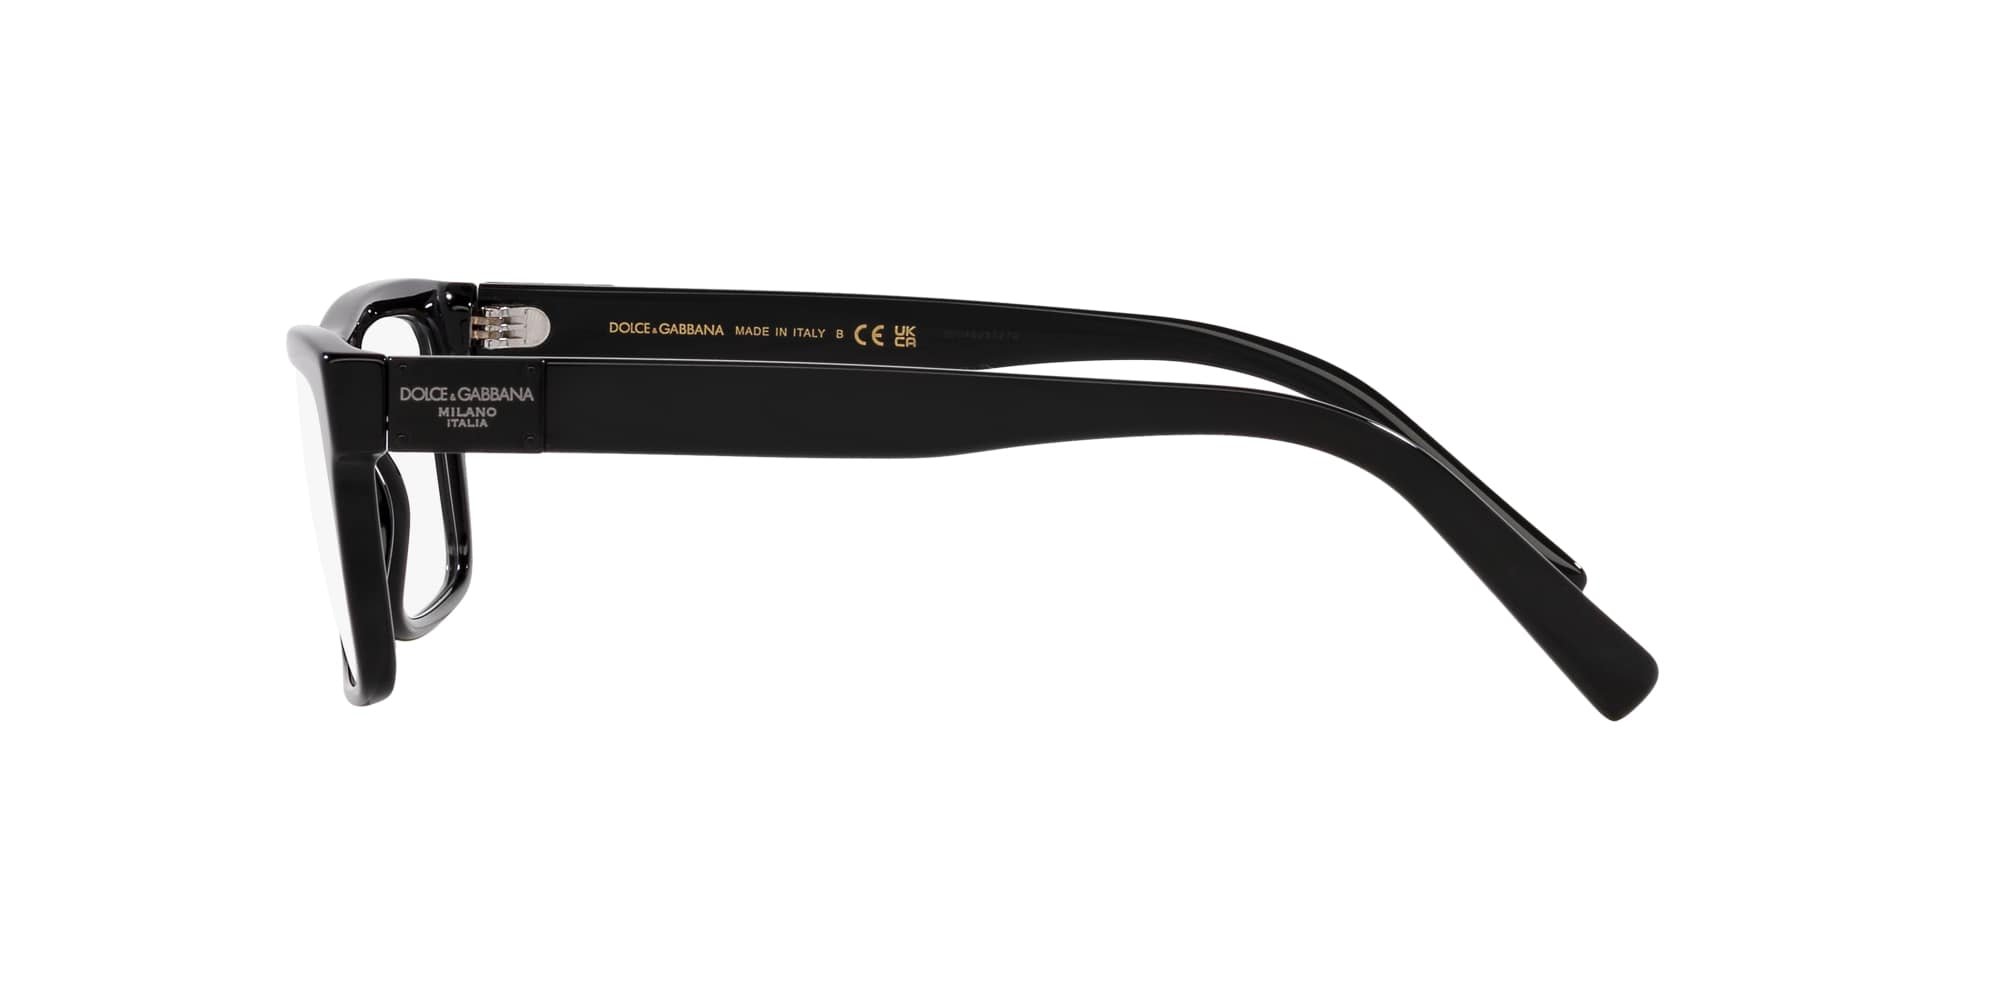 Das Bild zeigt die Korrektionsbrille DG3368 501 von der Marke D&G in schwarz.